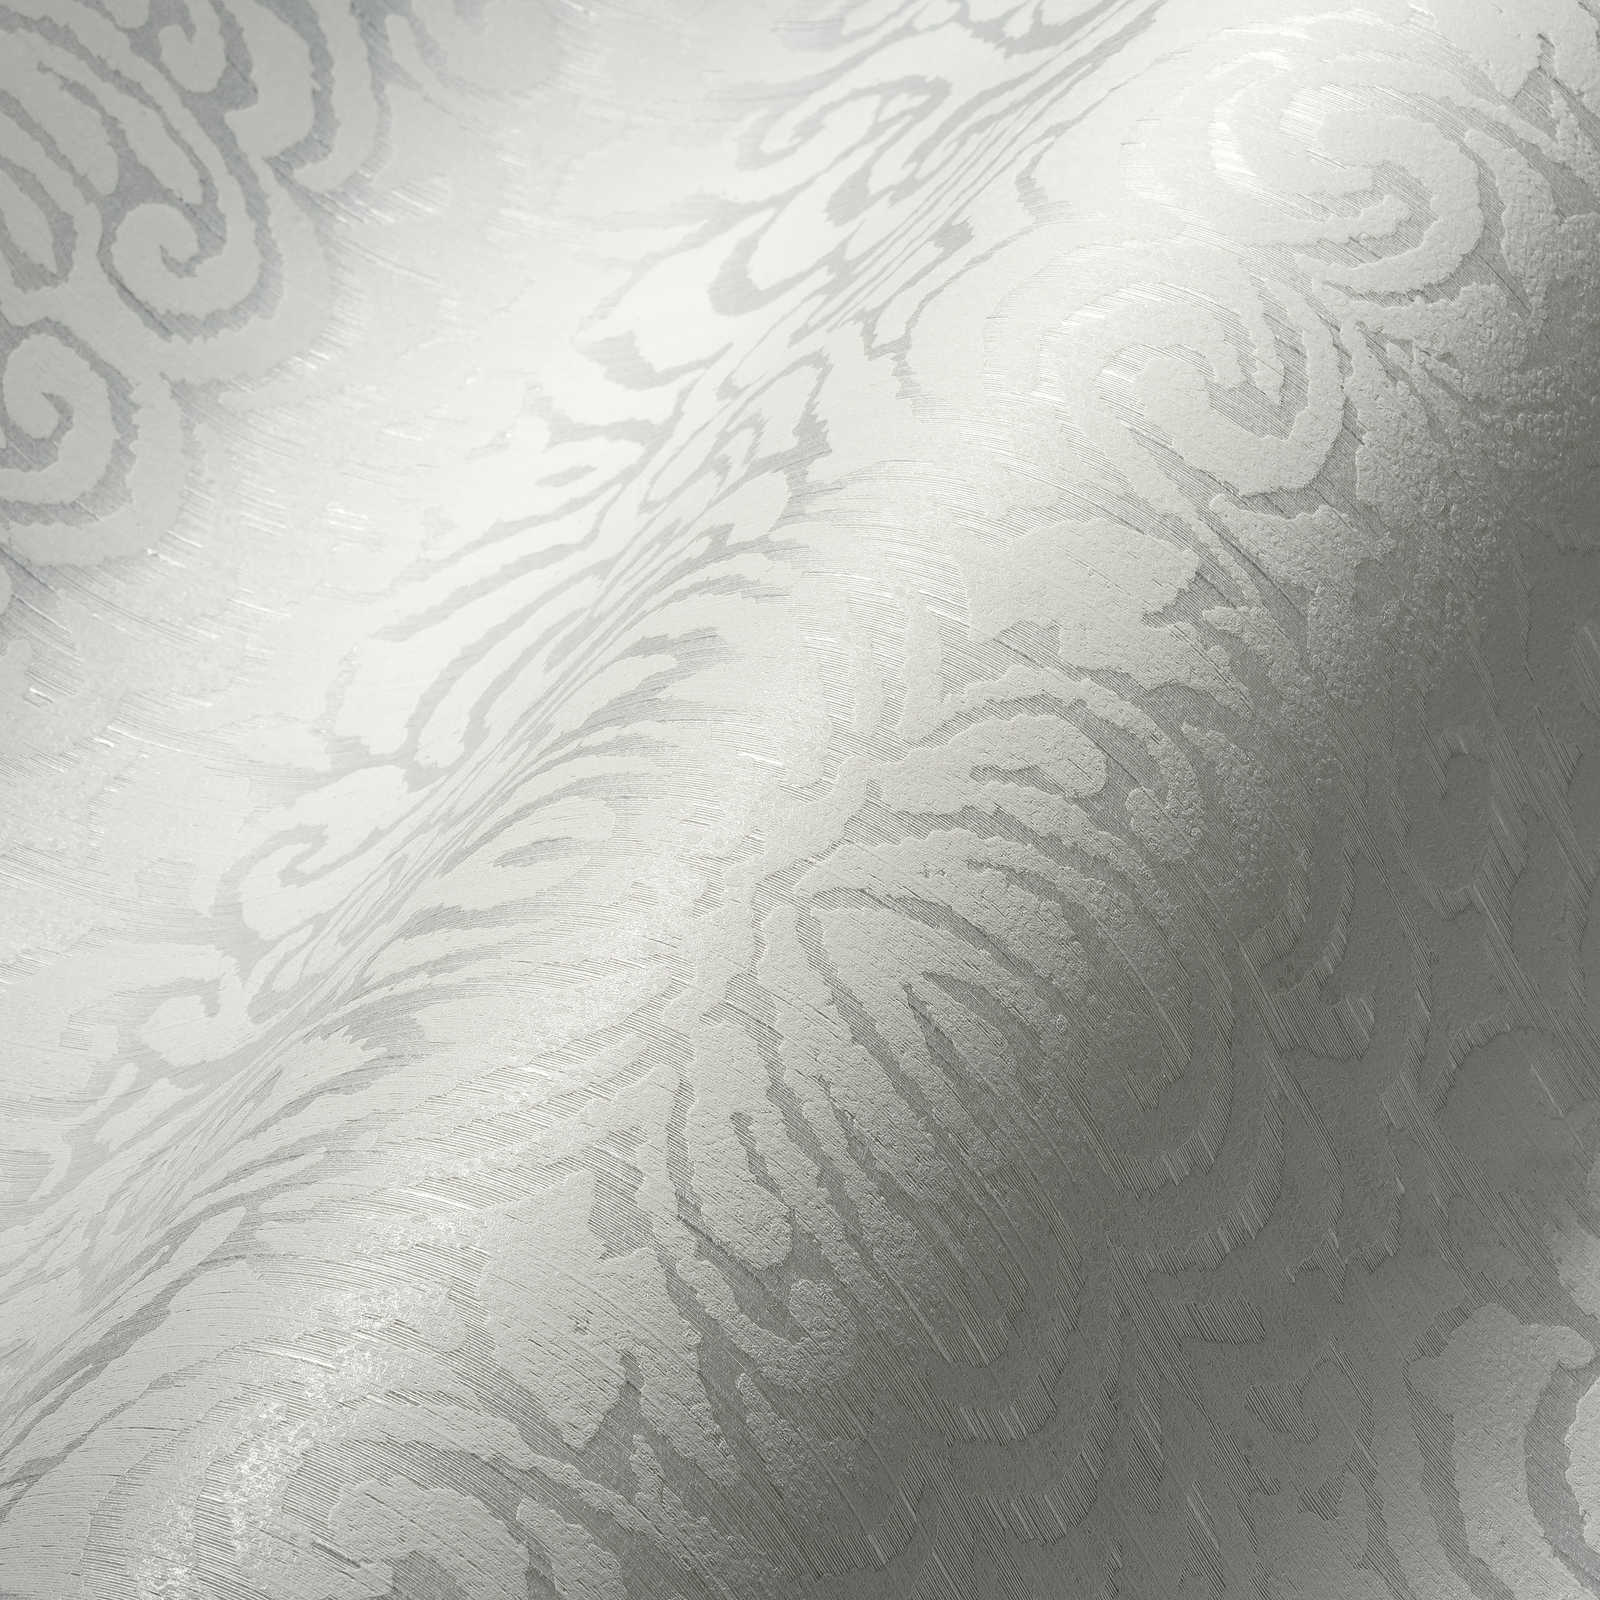             Behang met ornament patroon en structuur effect - wit
        